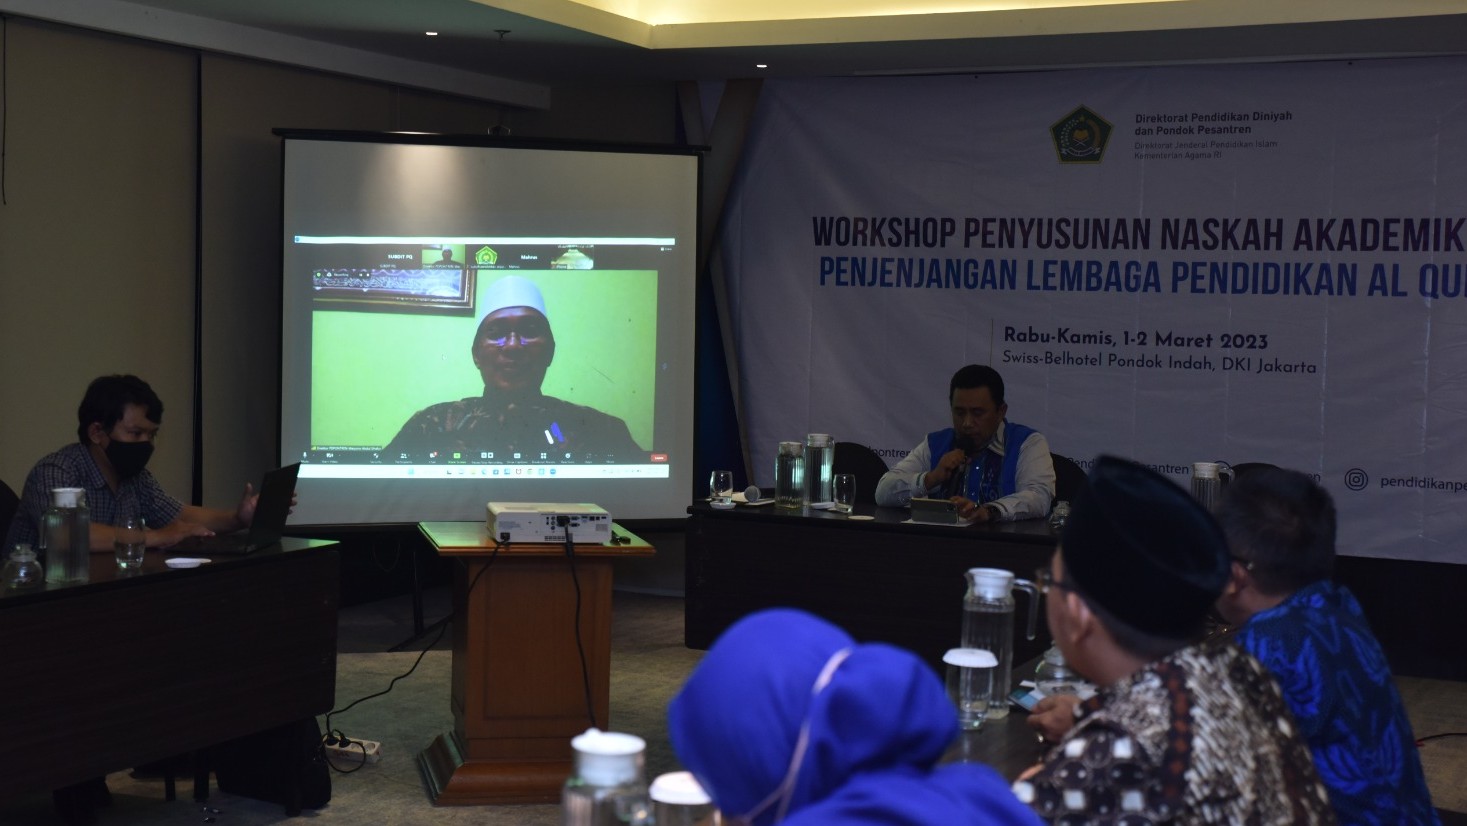 Workshop Penyusunan Naskah Akademik dan Penjenjangan Lembaga Pendidikan Al-Qur'an